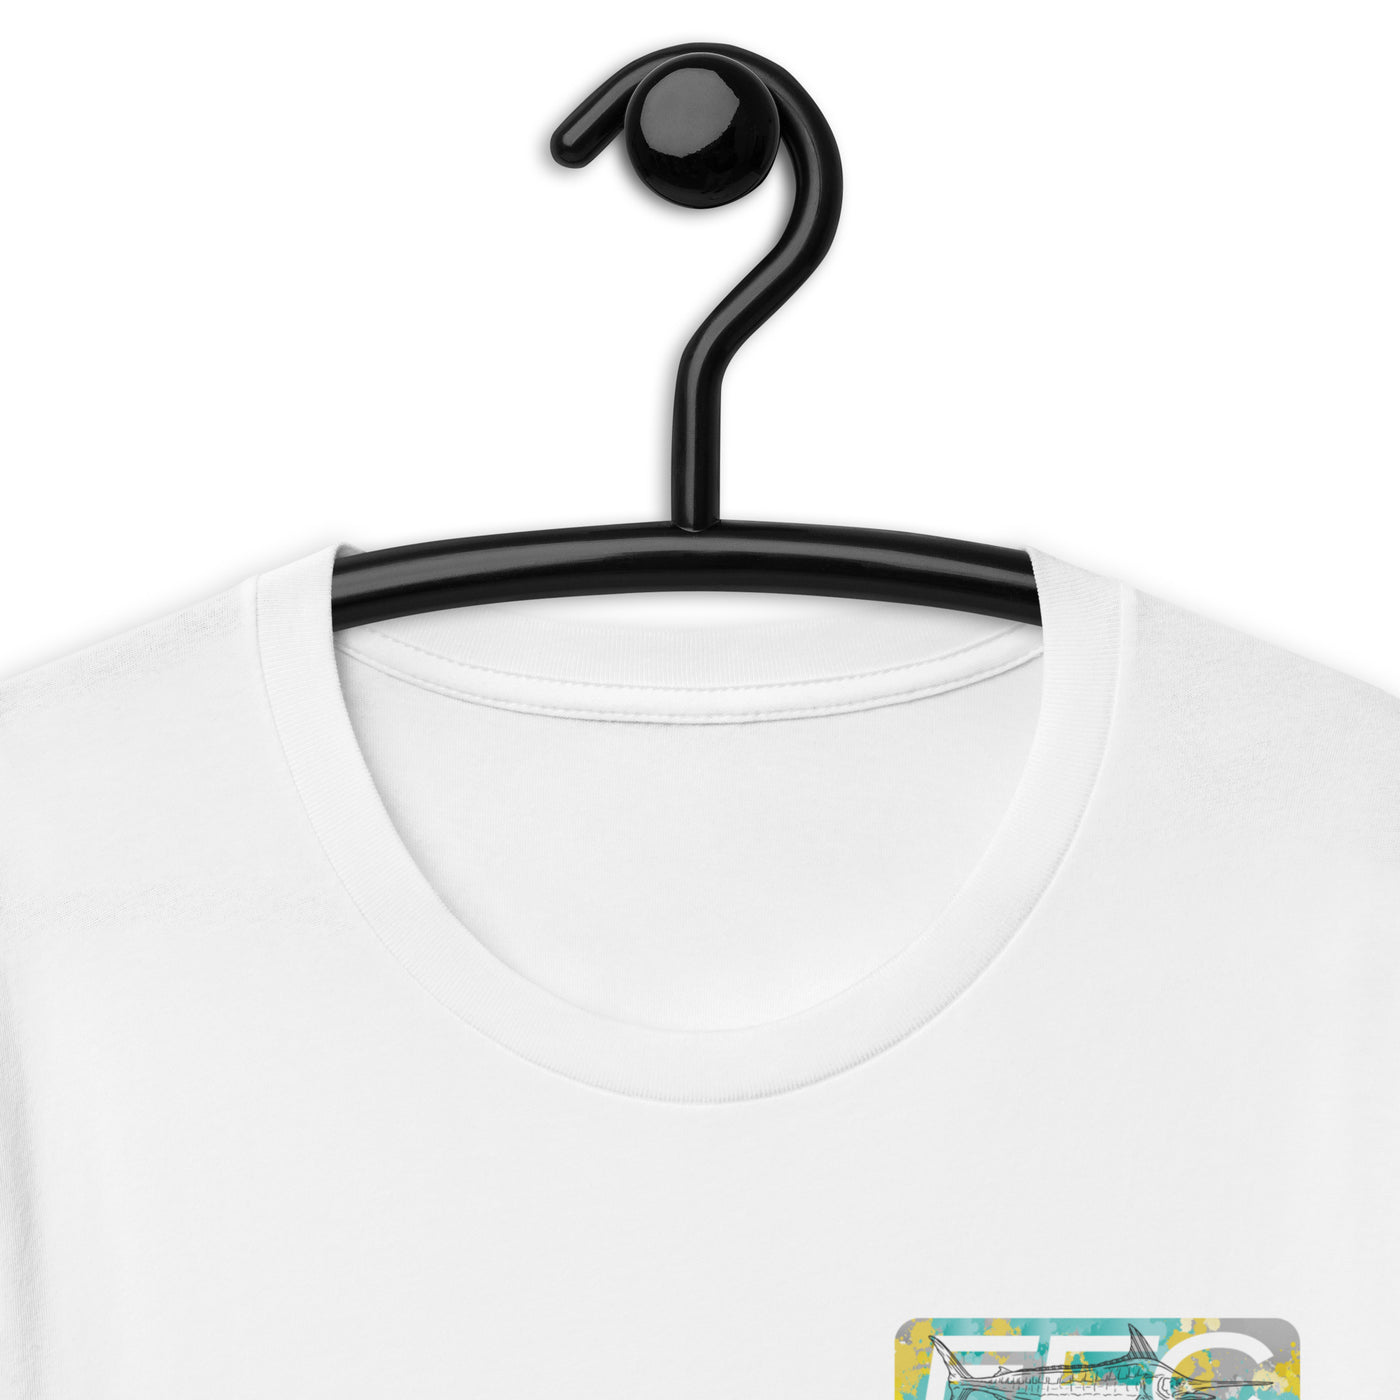 EFC MARLIN t-shirt